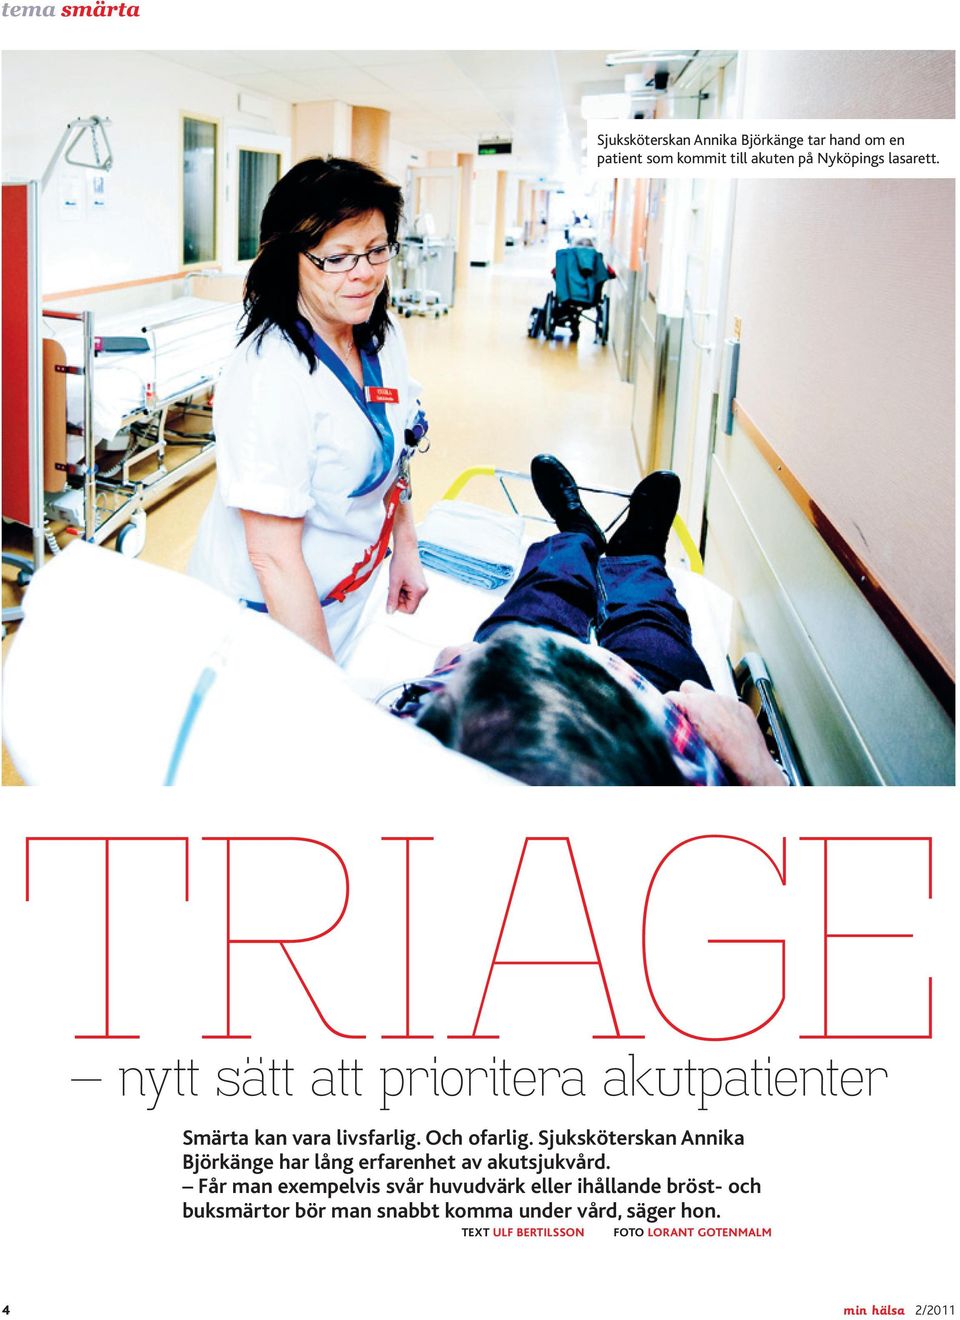 Sjuksköterskan Annika Björkänge har lång erfarenhet av akutsjukvård.